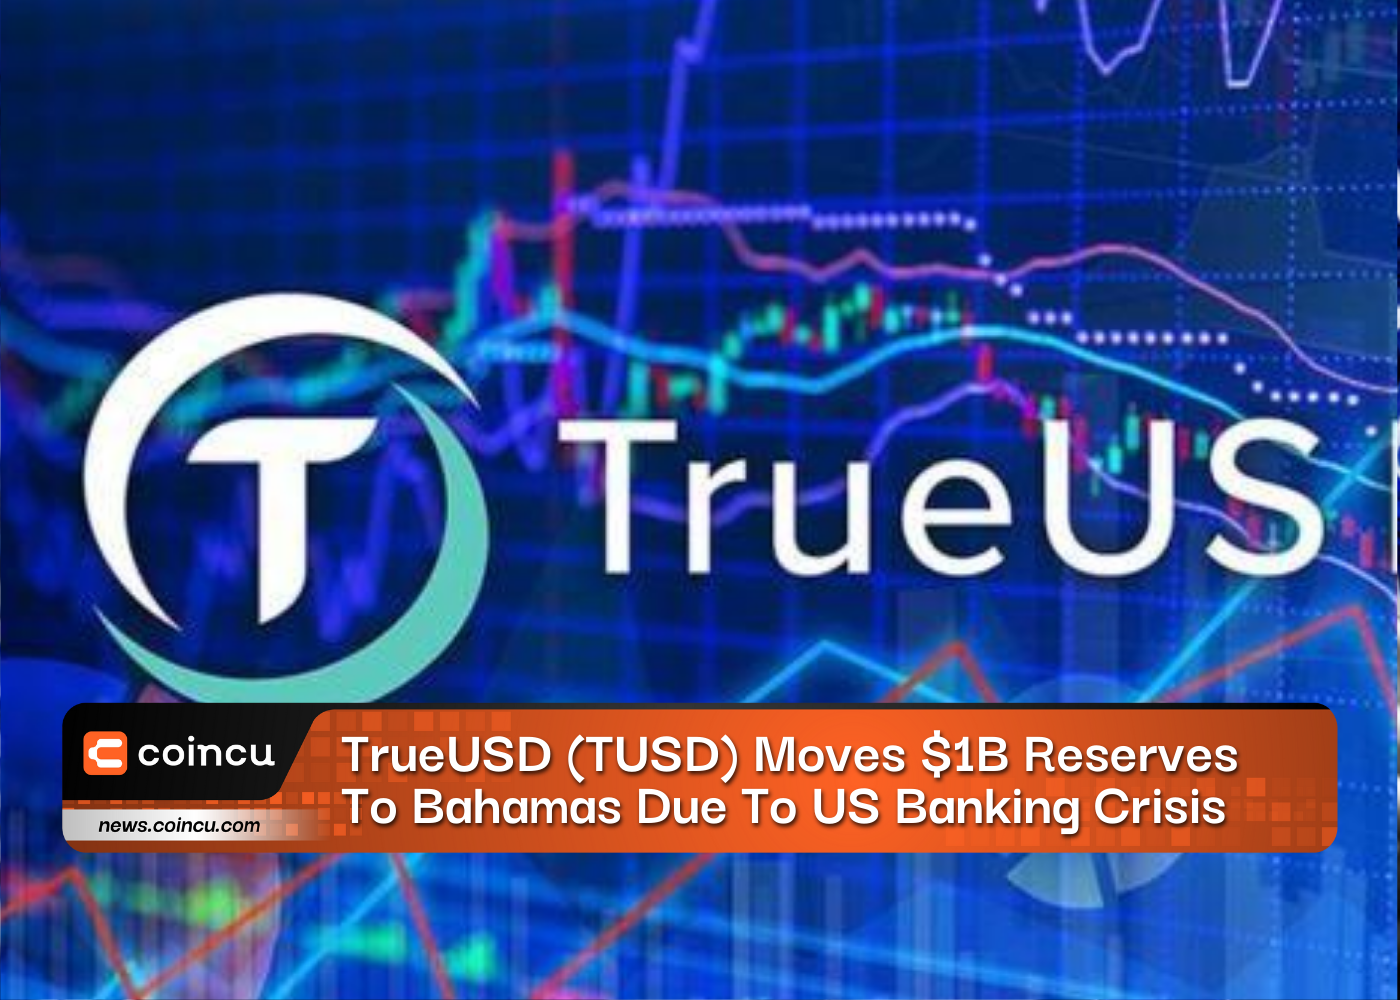 TrueUSD (TUSD) transfere reservas de US$ 1 bilhão para as Bahamas devido à crise bancária nos EUA